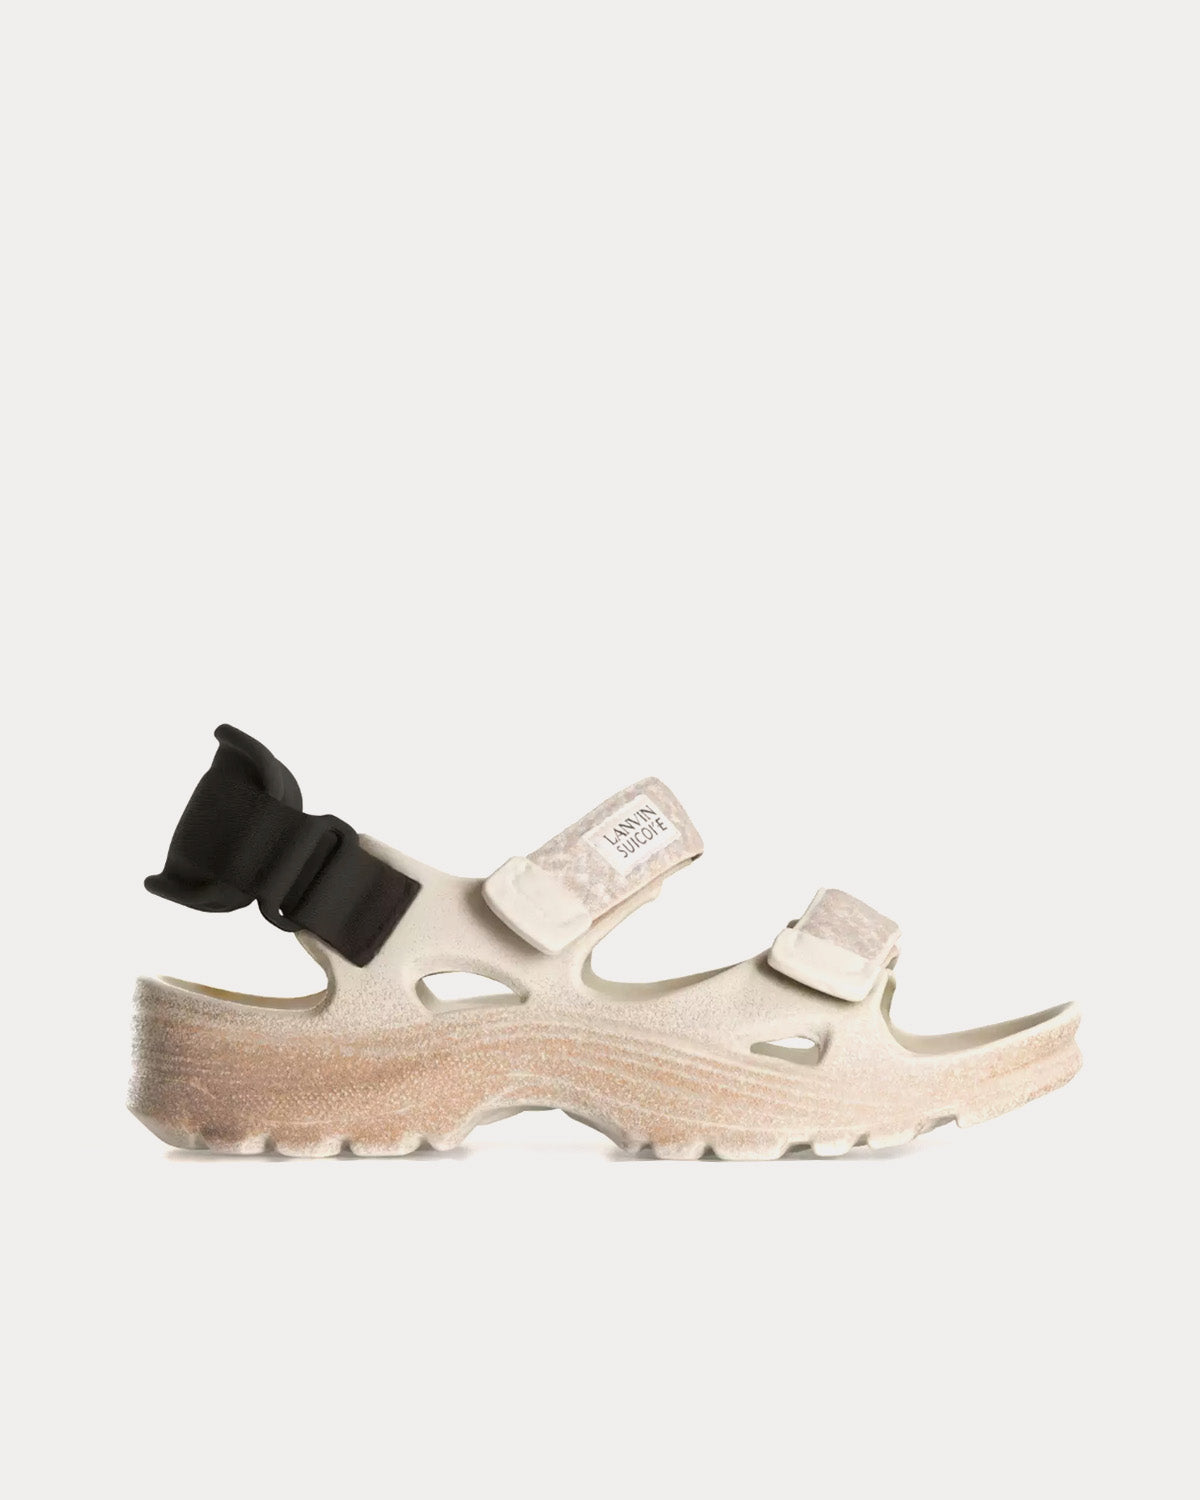 Lanvin x Suicoke - Depa V2 Off-White Sandals